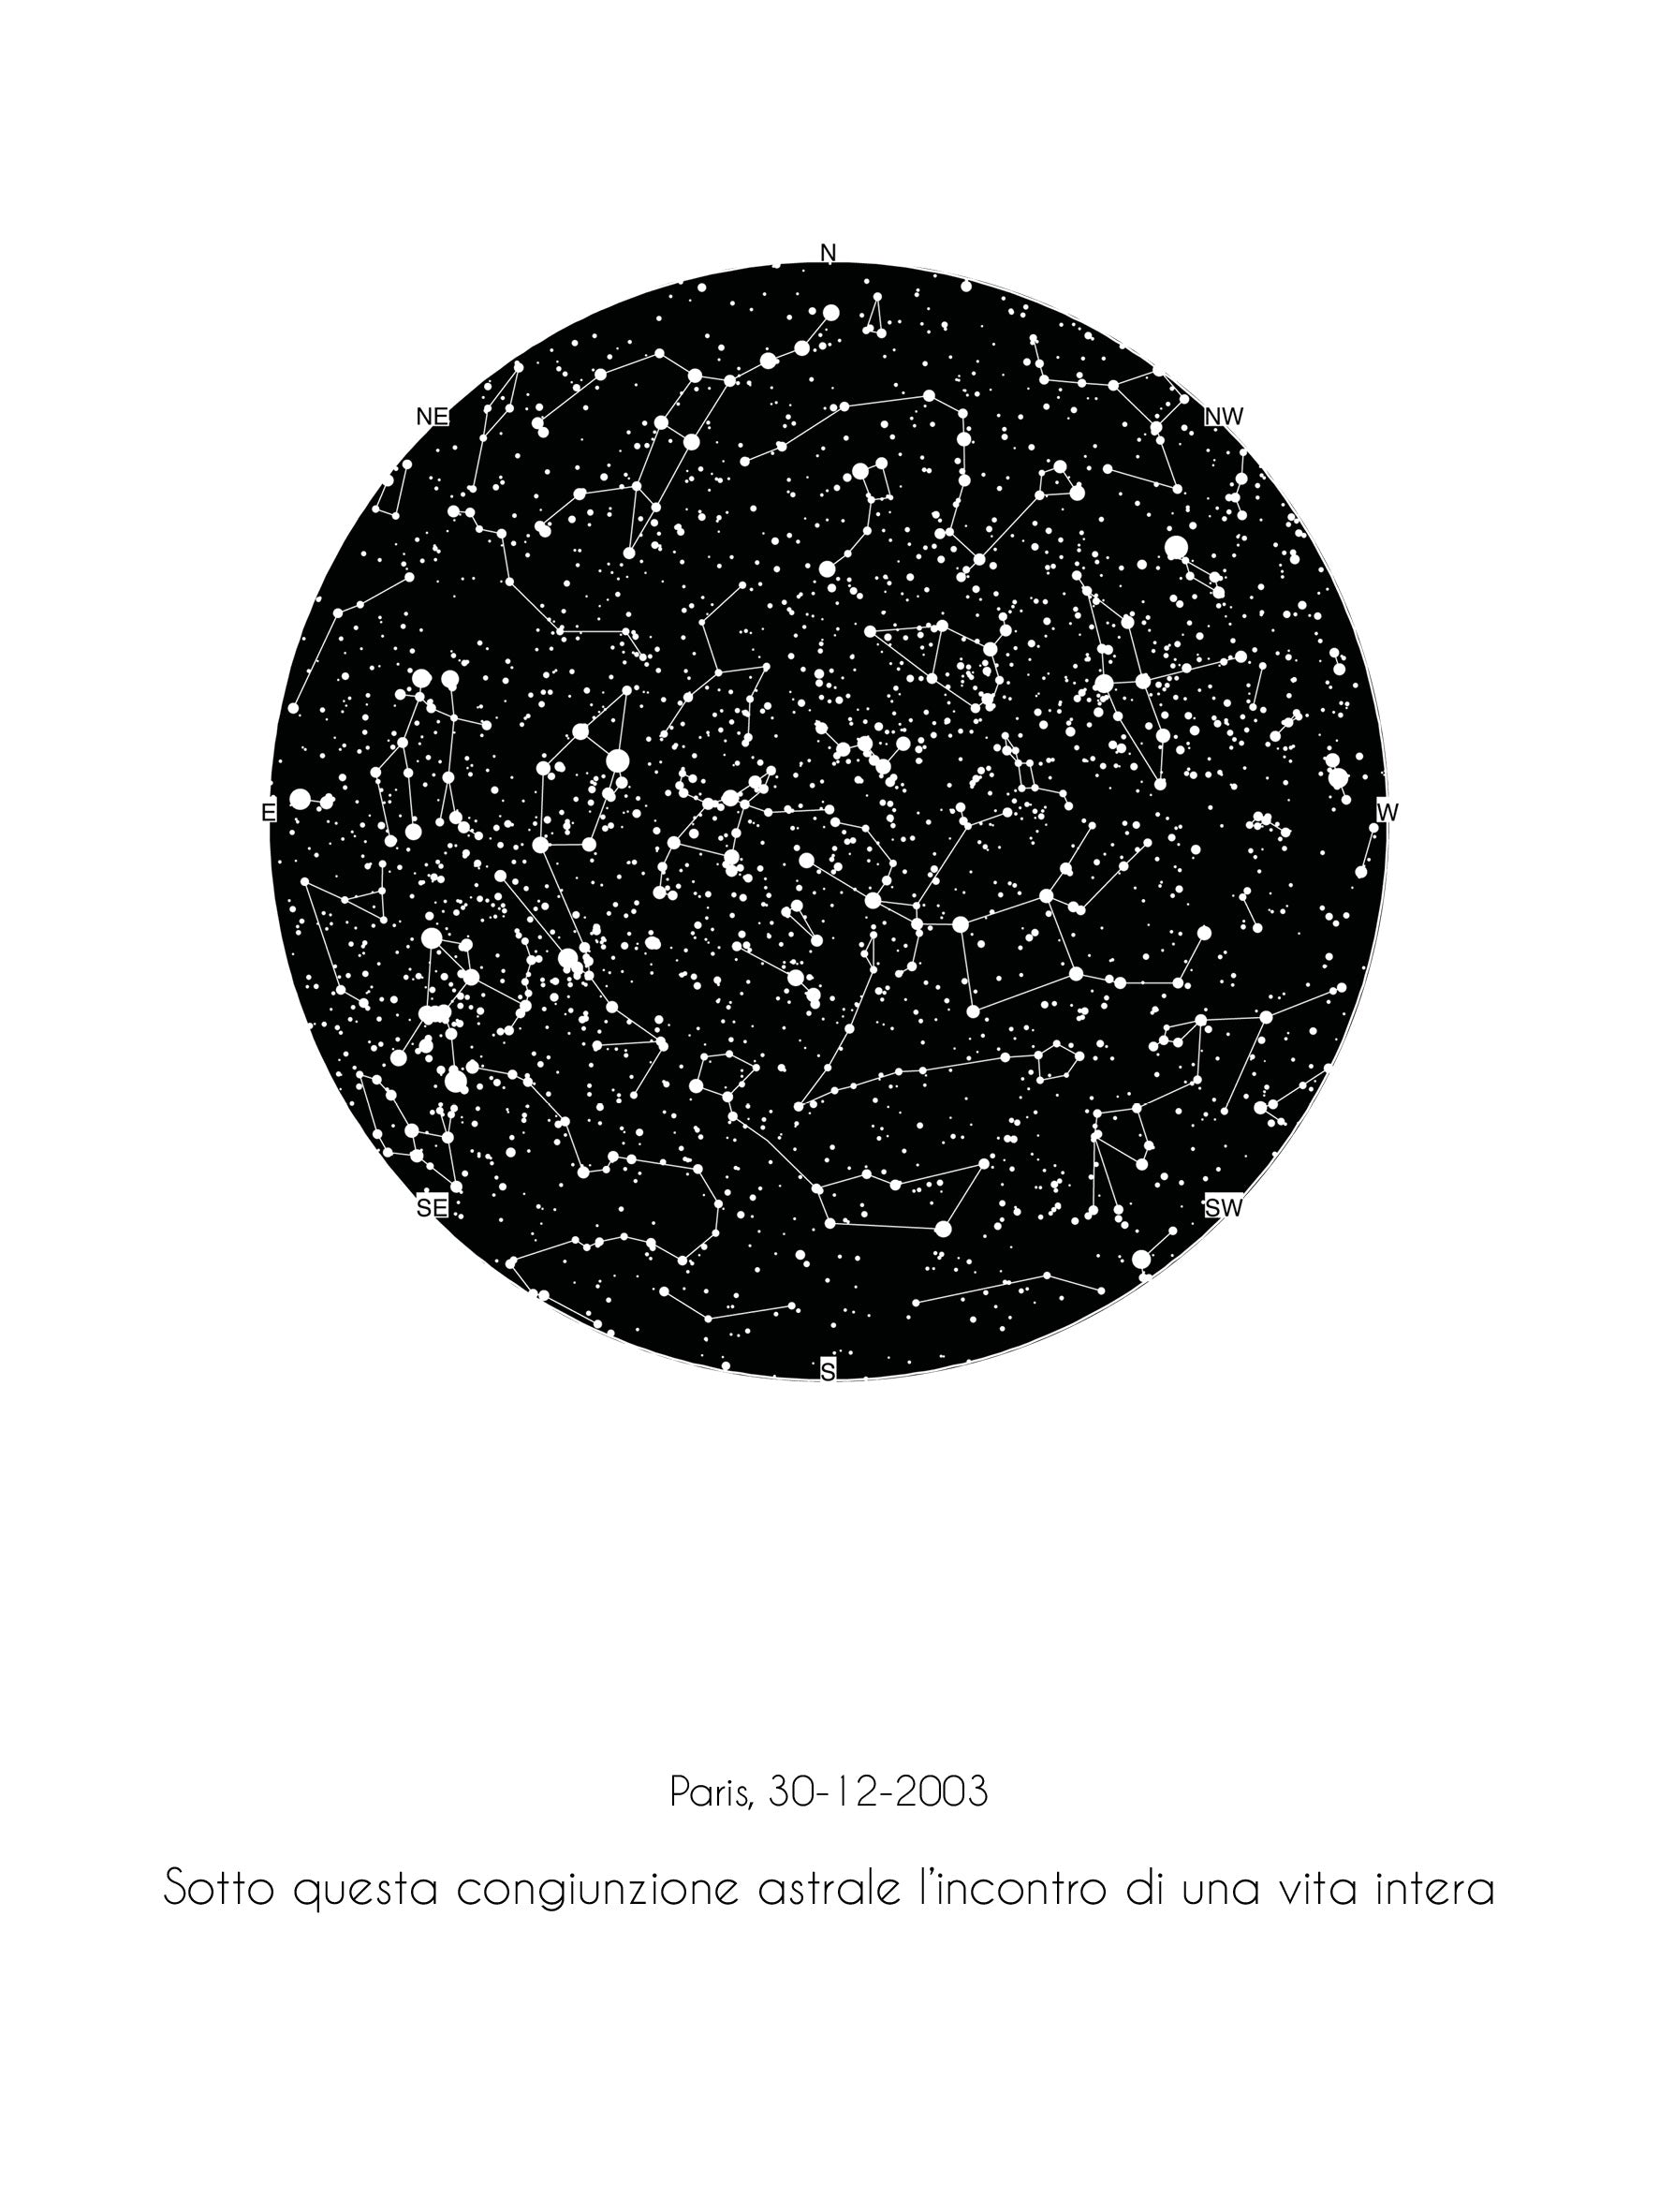 Mappa stellare 30x40 cm senza nomi costellazioni